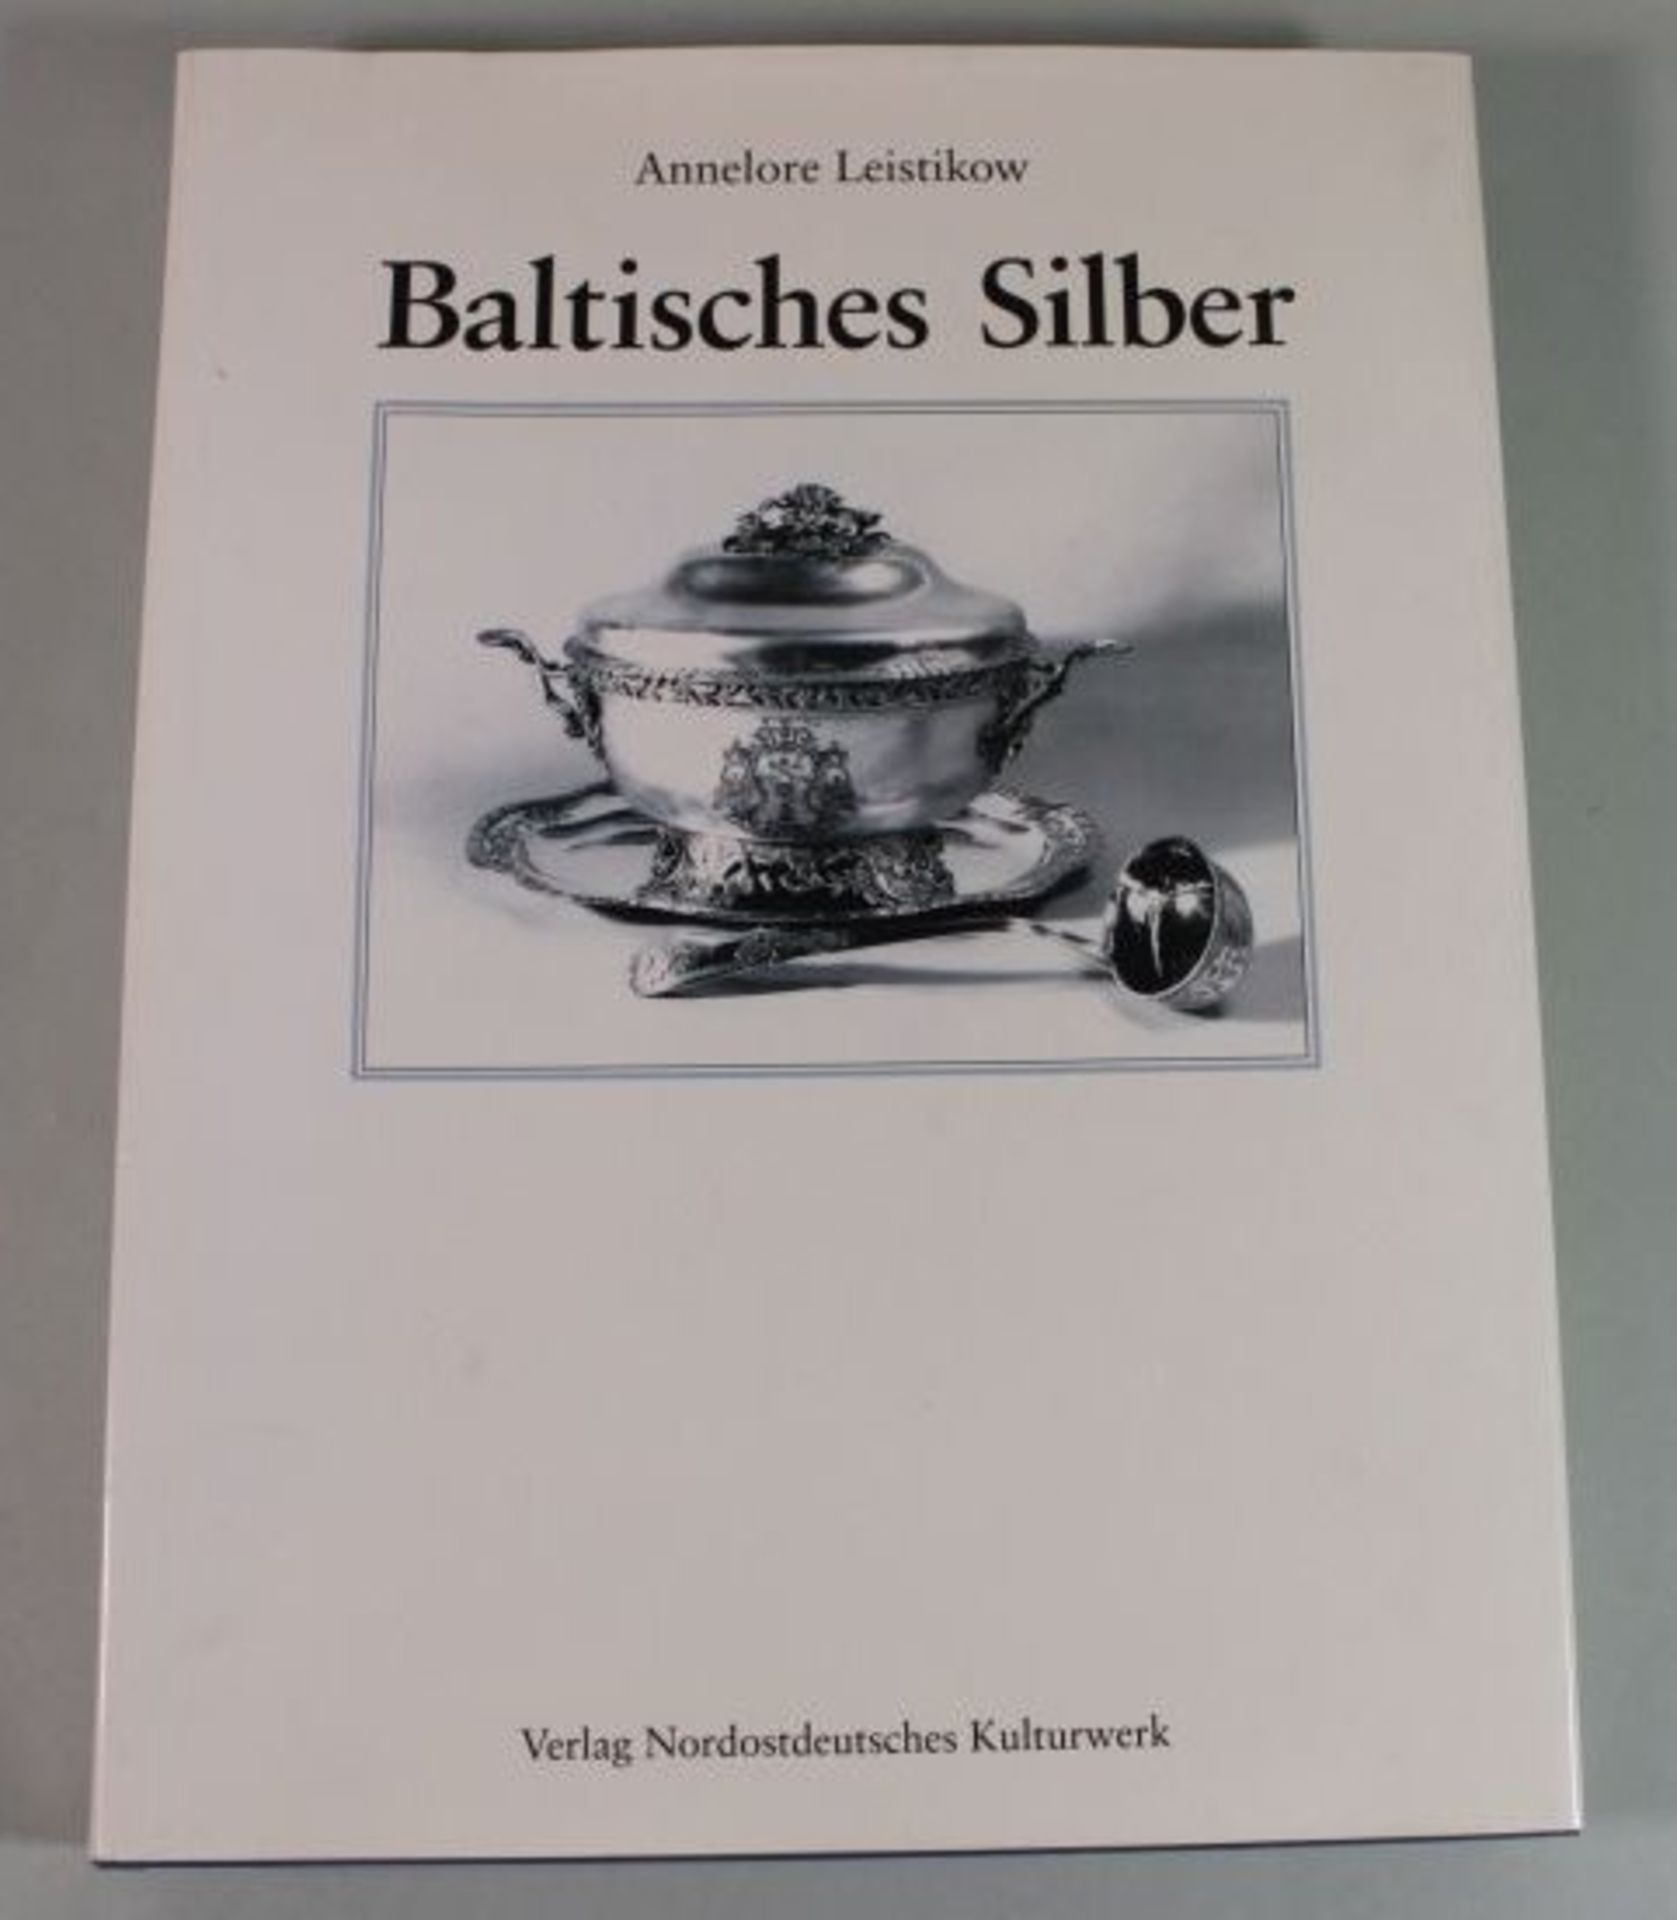 Baltisches Silber, Annelore Leistikov, 1996.